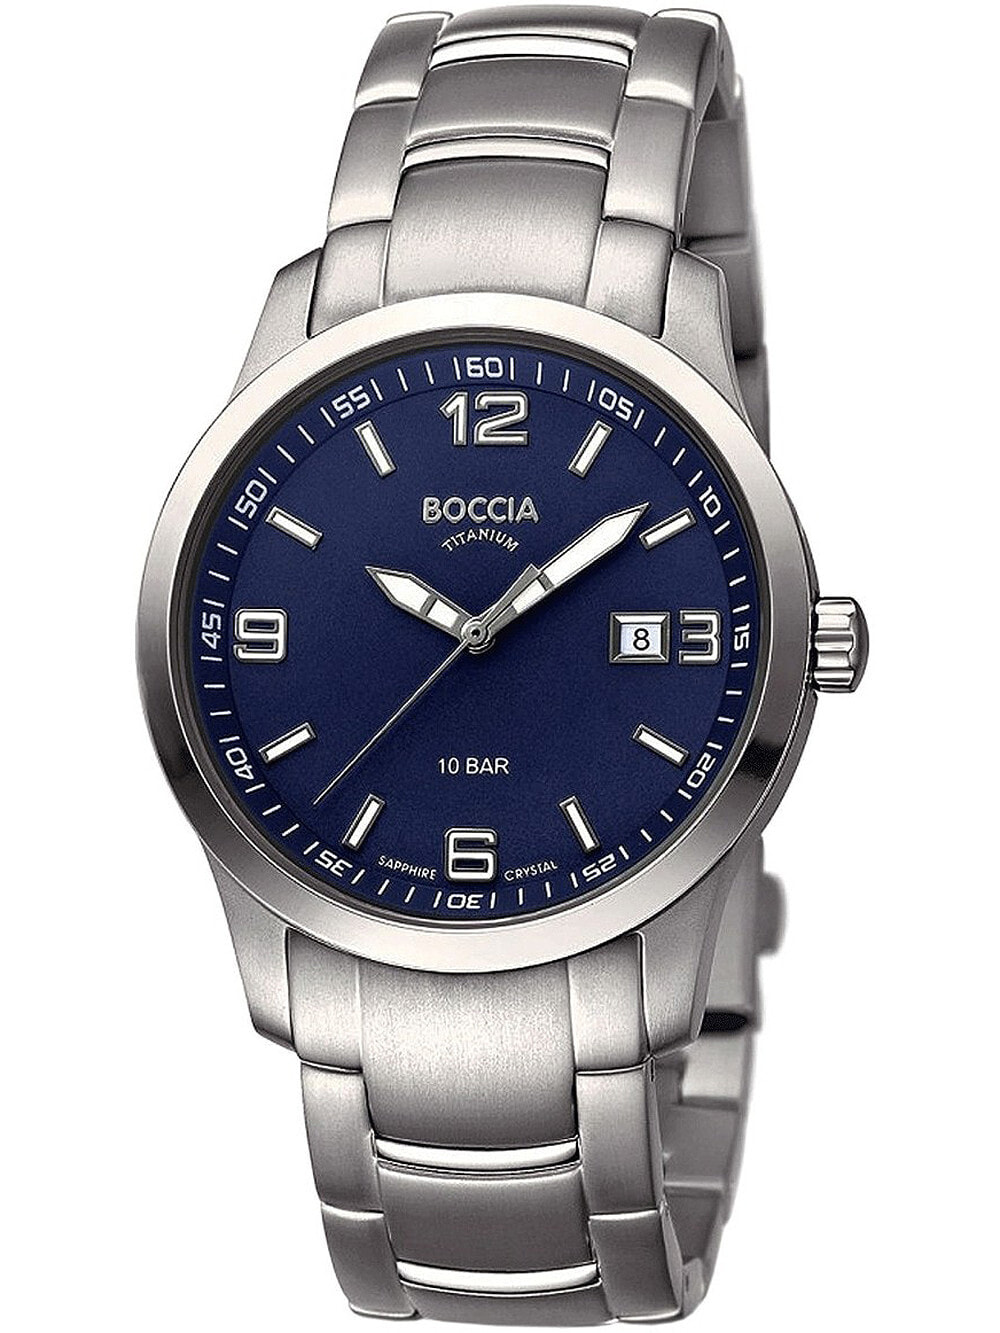 Мужские наручные часы с серебряным браслетом Boccia 3626-05 mens watch titanium 38mm 10ATM